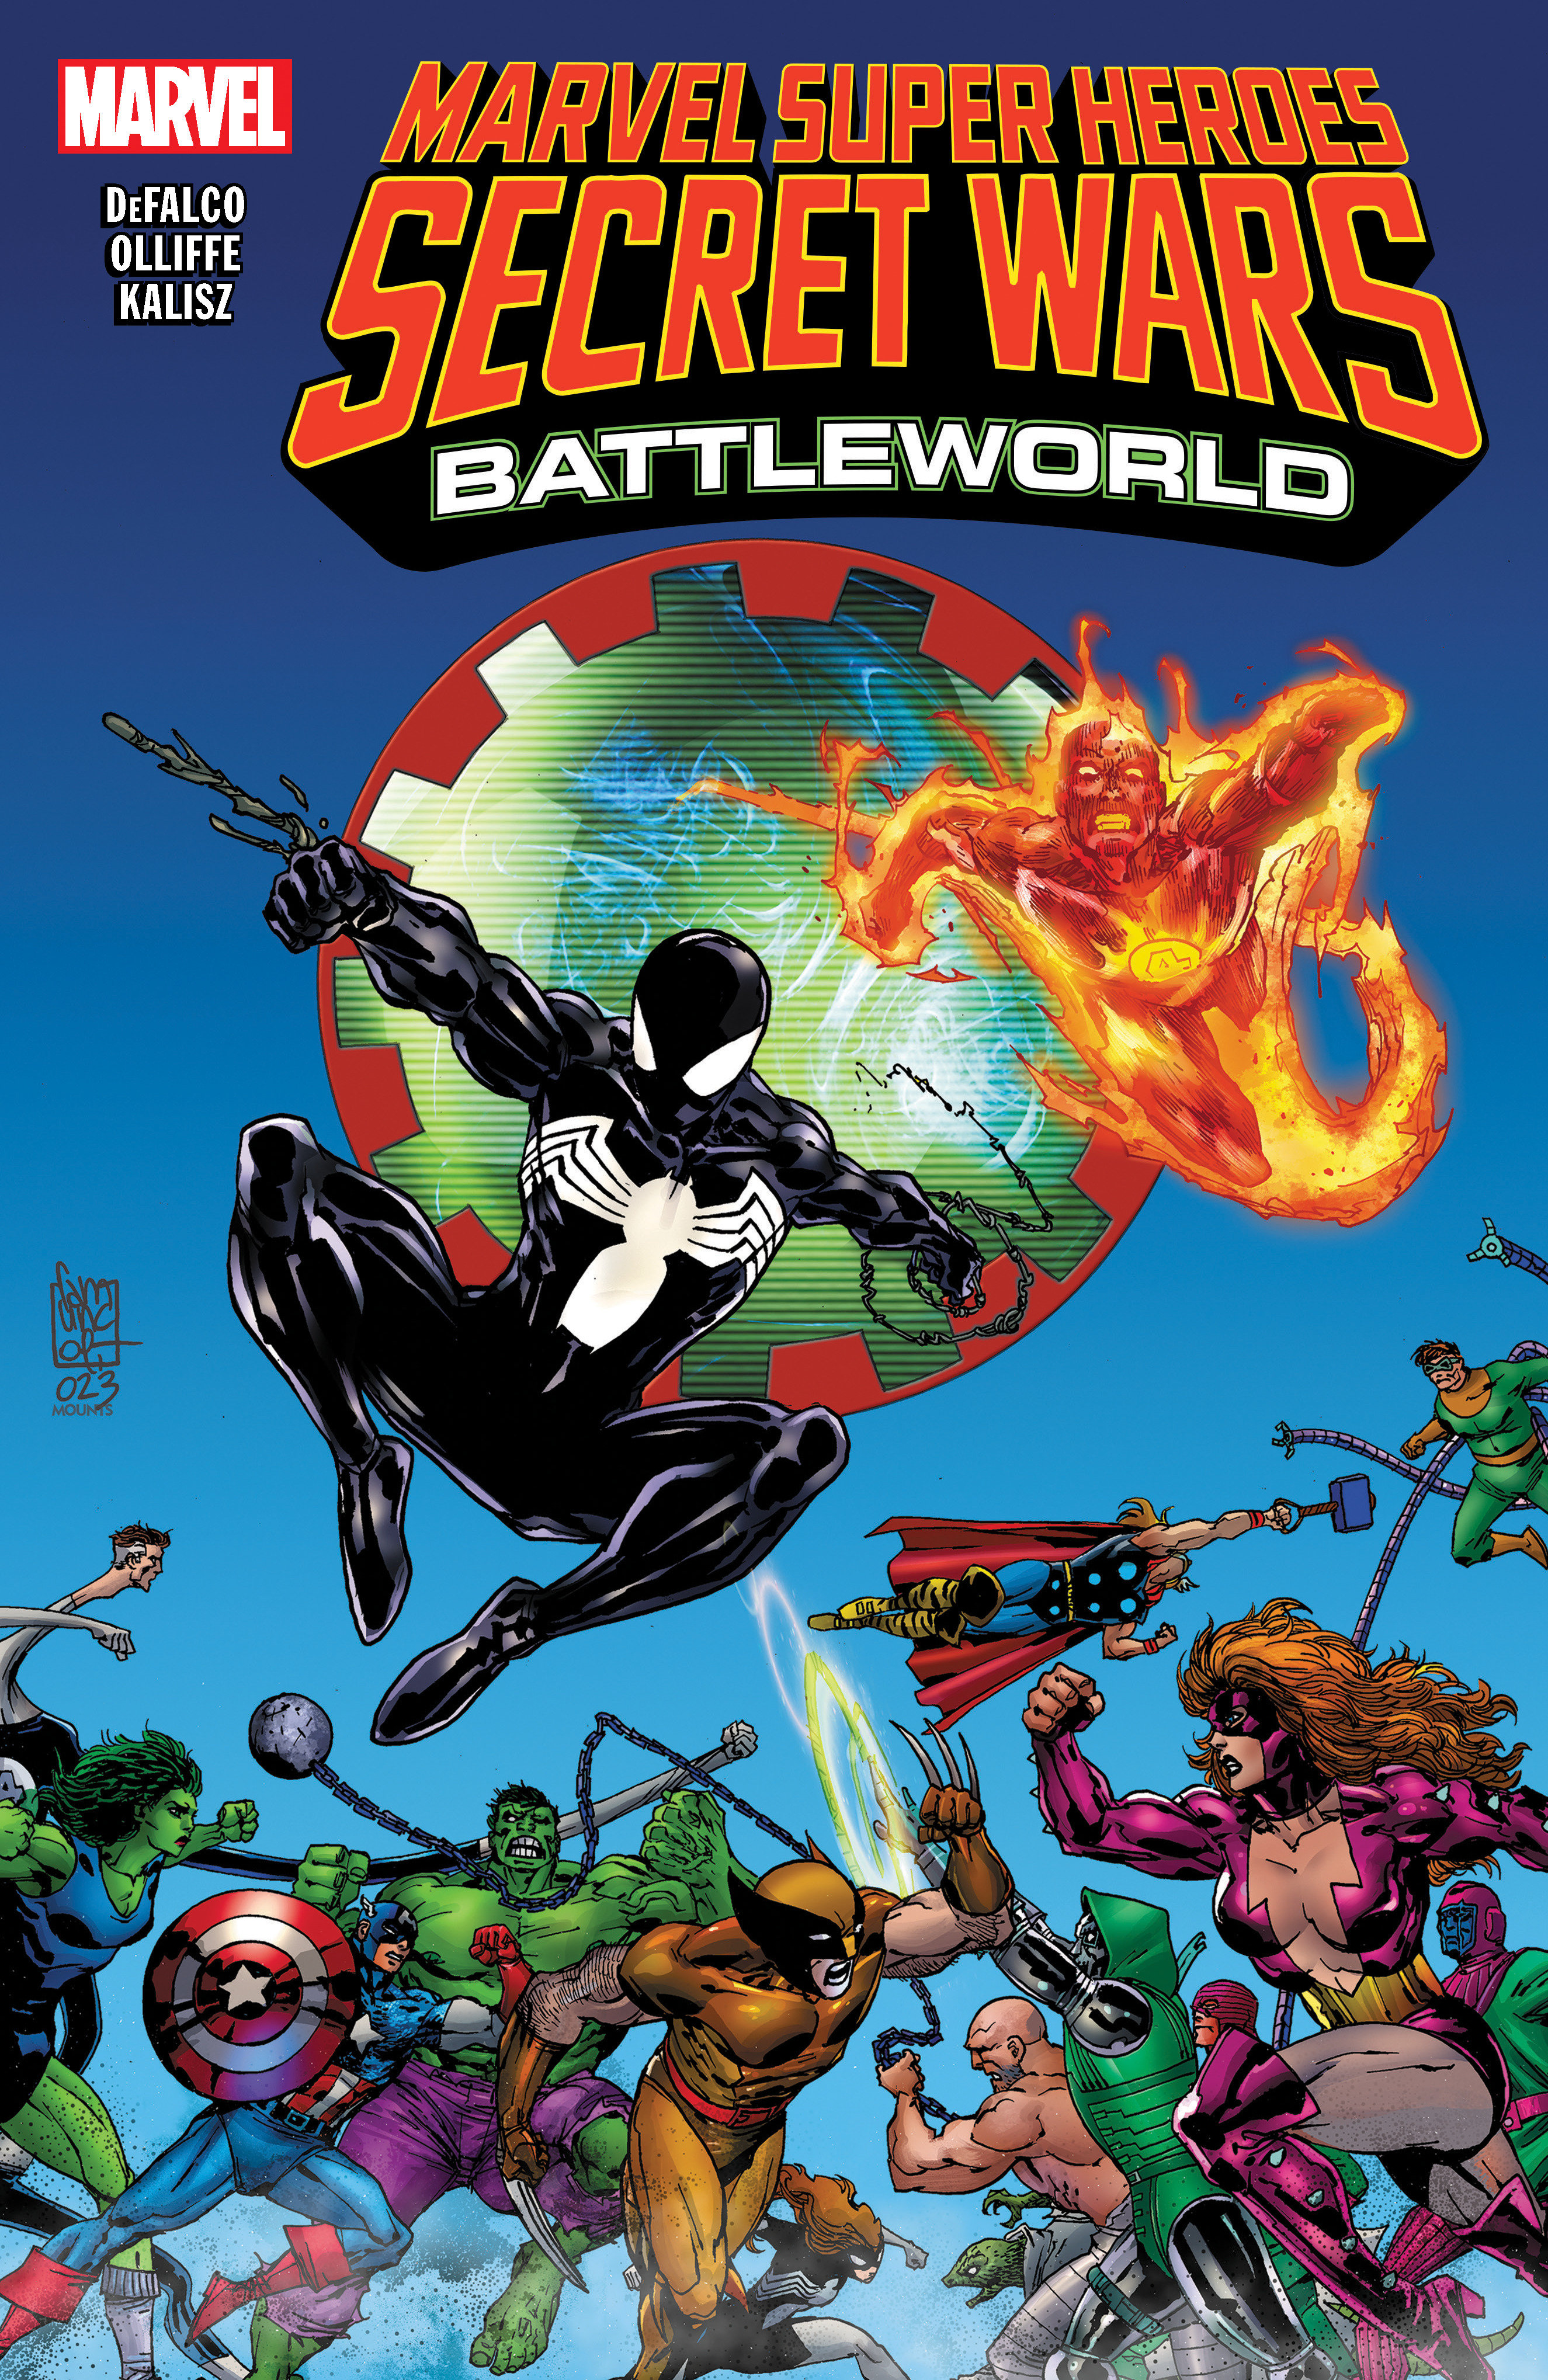 Marvel Super Heroes Secret Wars: Battleworld Graphic Novel